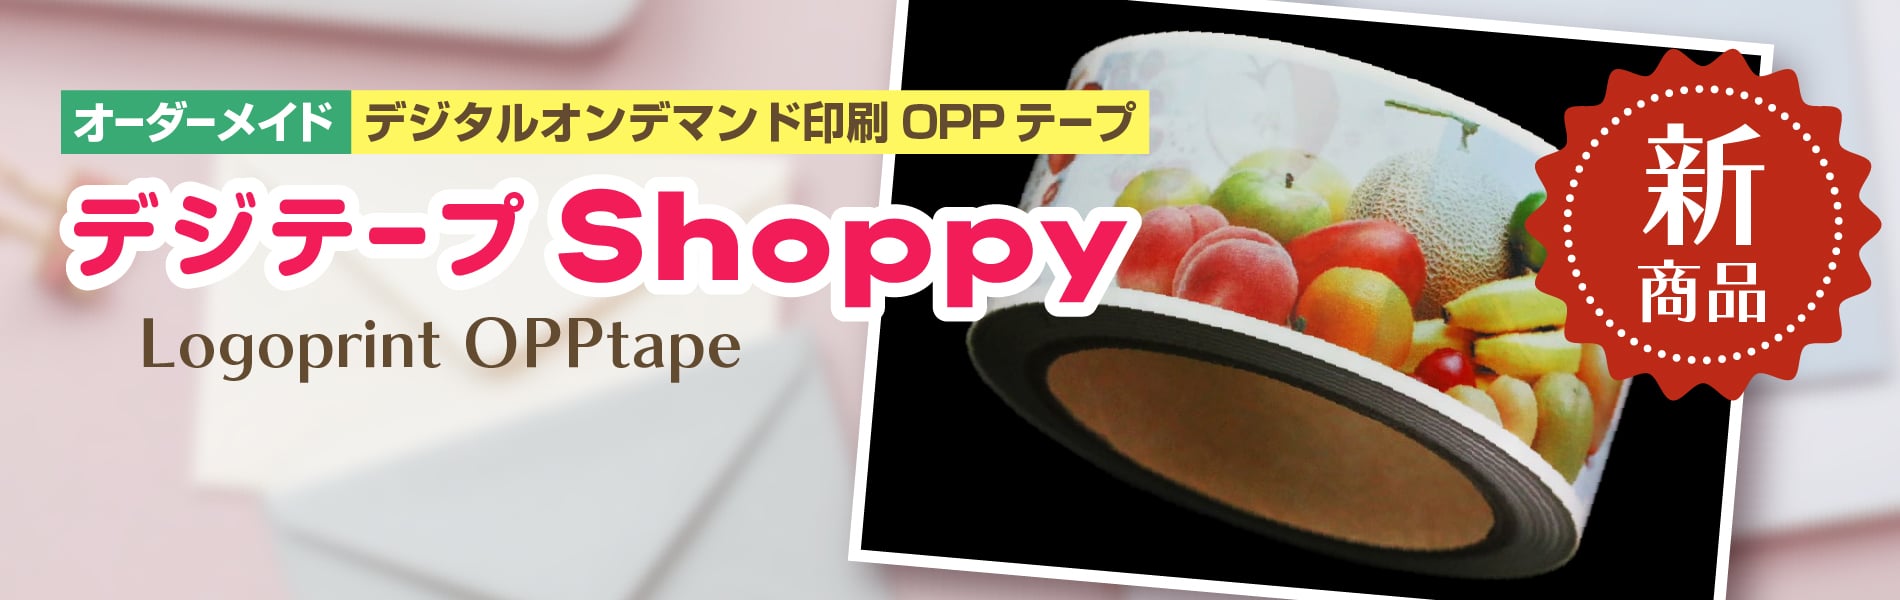 新商品 デジテープShoppy（ショッピー）